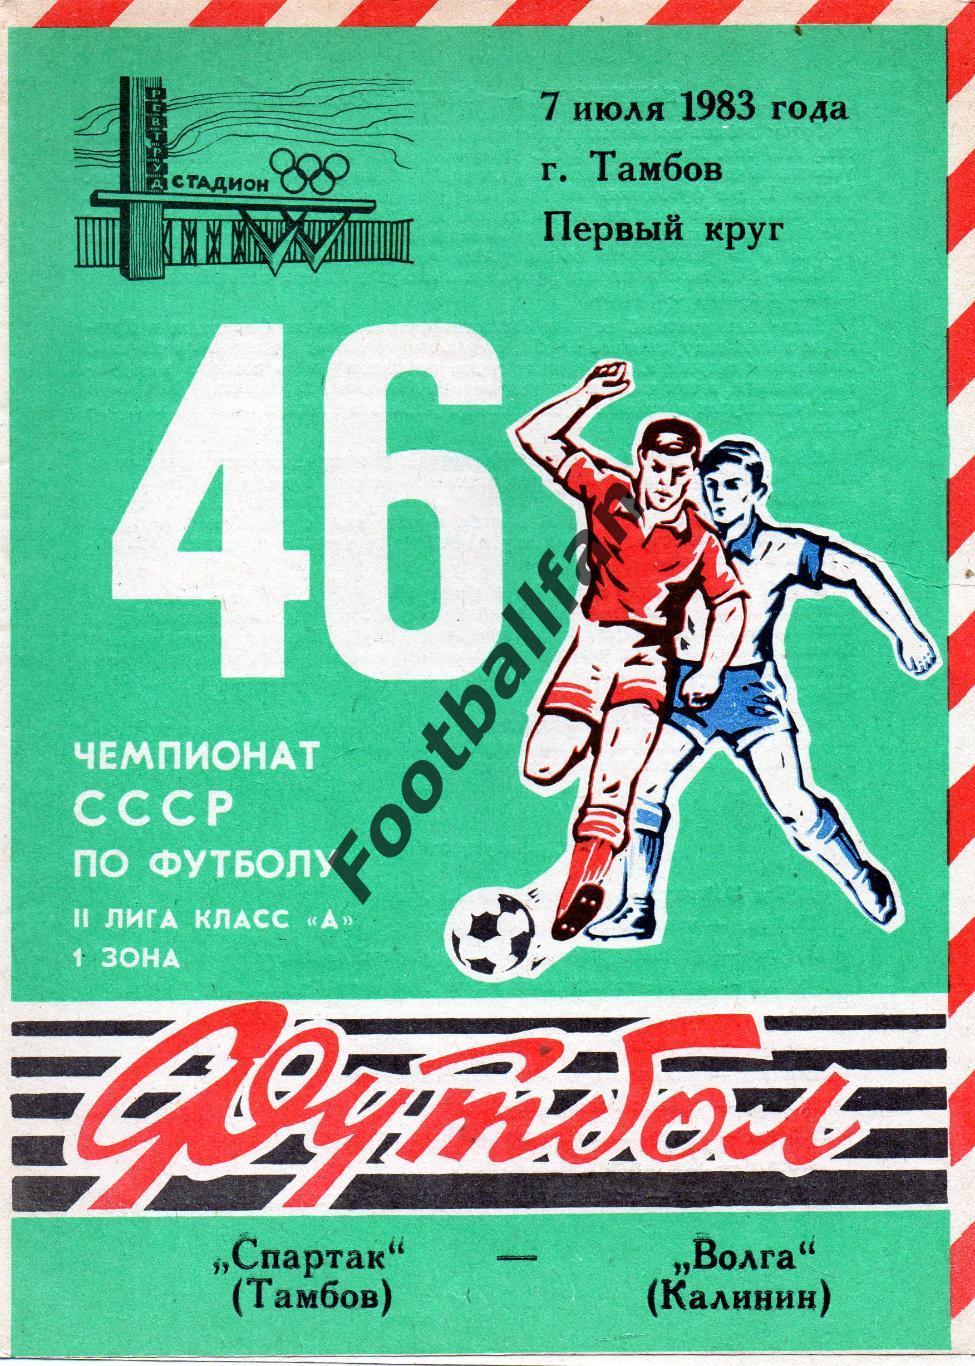 Спартак Тамбов - Волга Калинин 07.07.1983